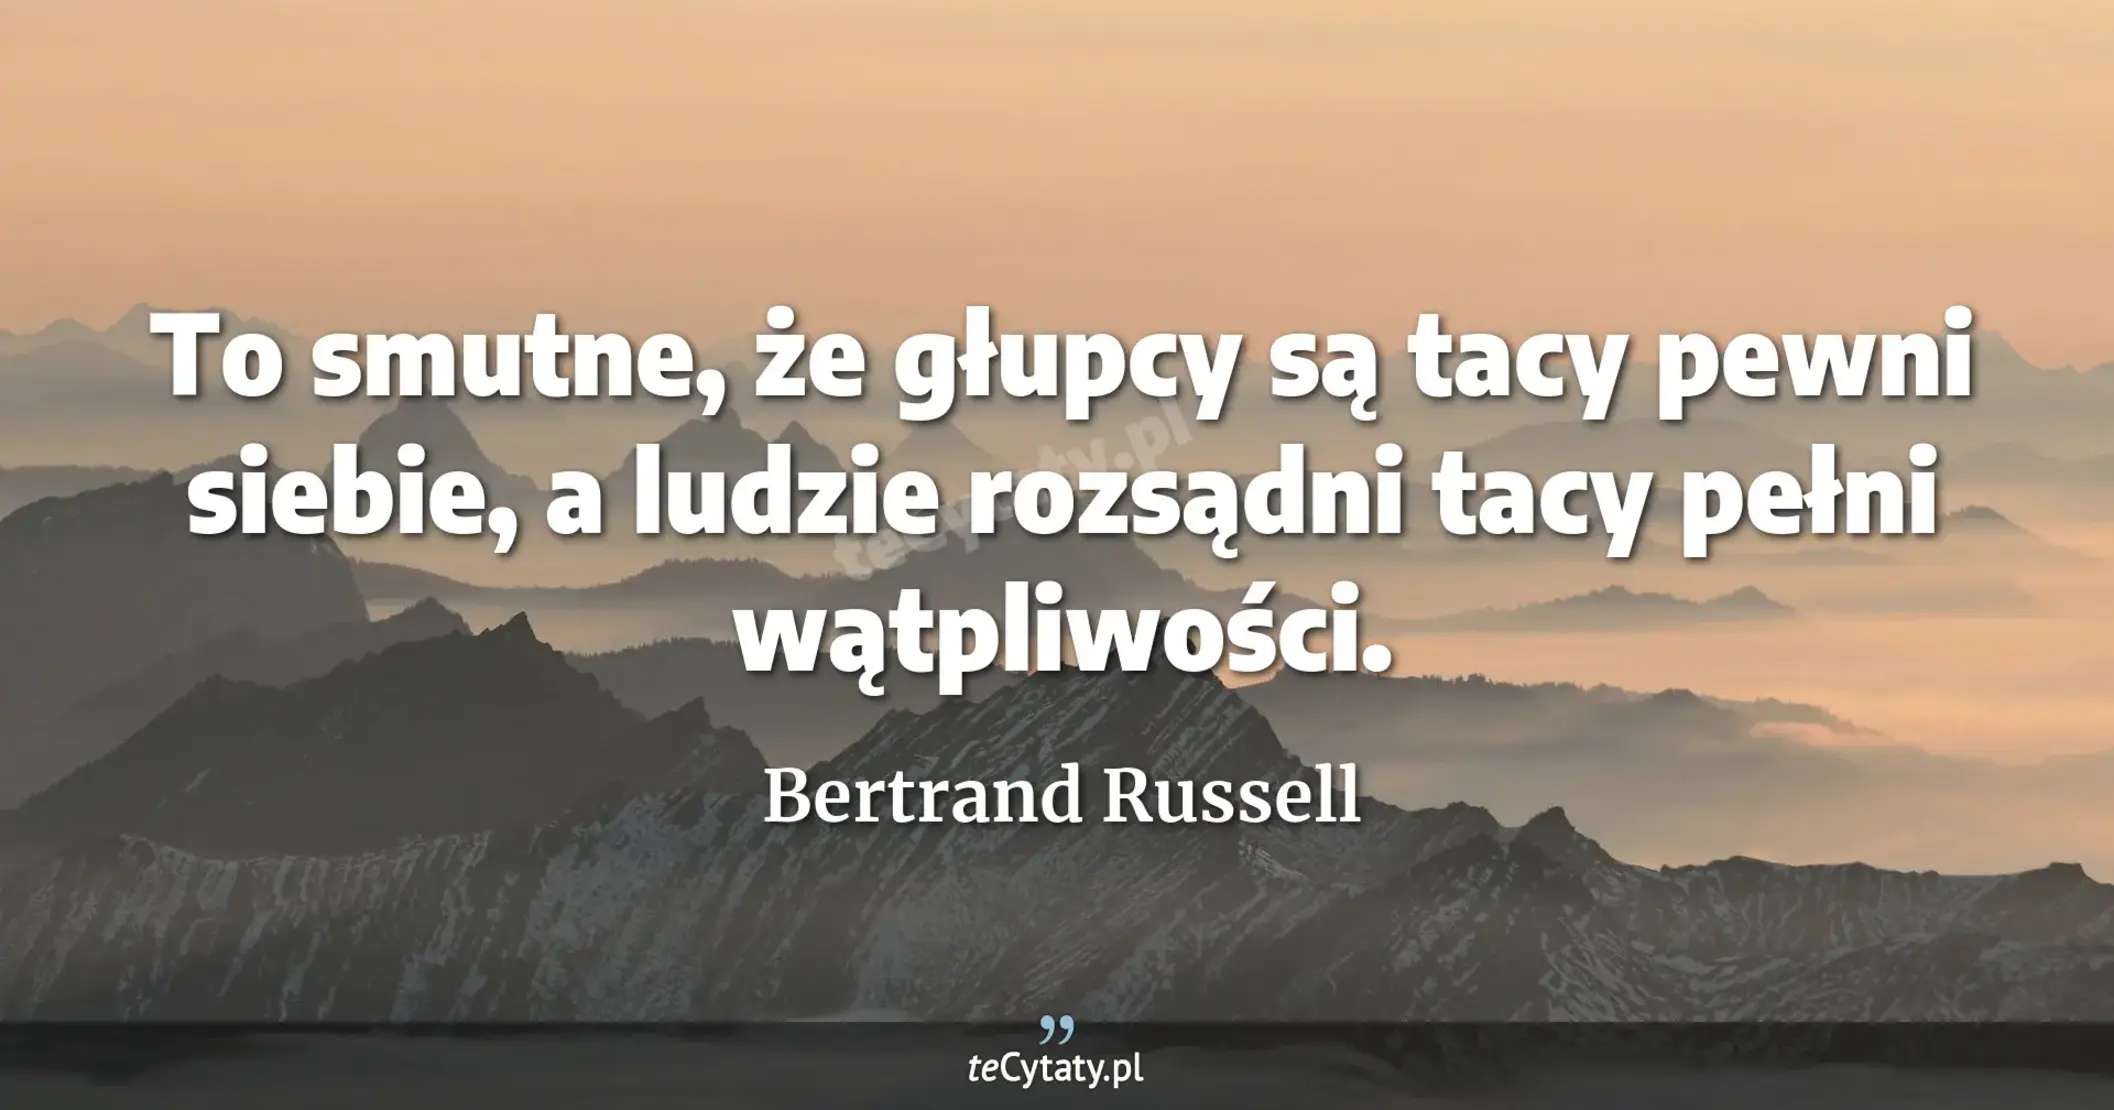 To smutne, że głupcy są tacy pewni siebie, a ludzie rozsądni tacy pełni wątpliwości. - Bertrand Russell